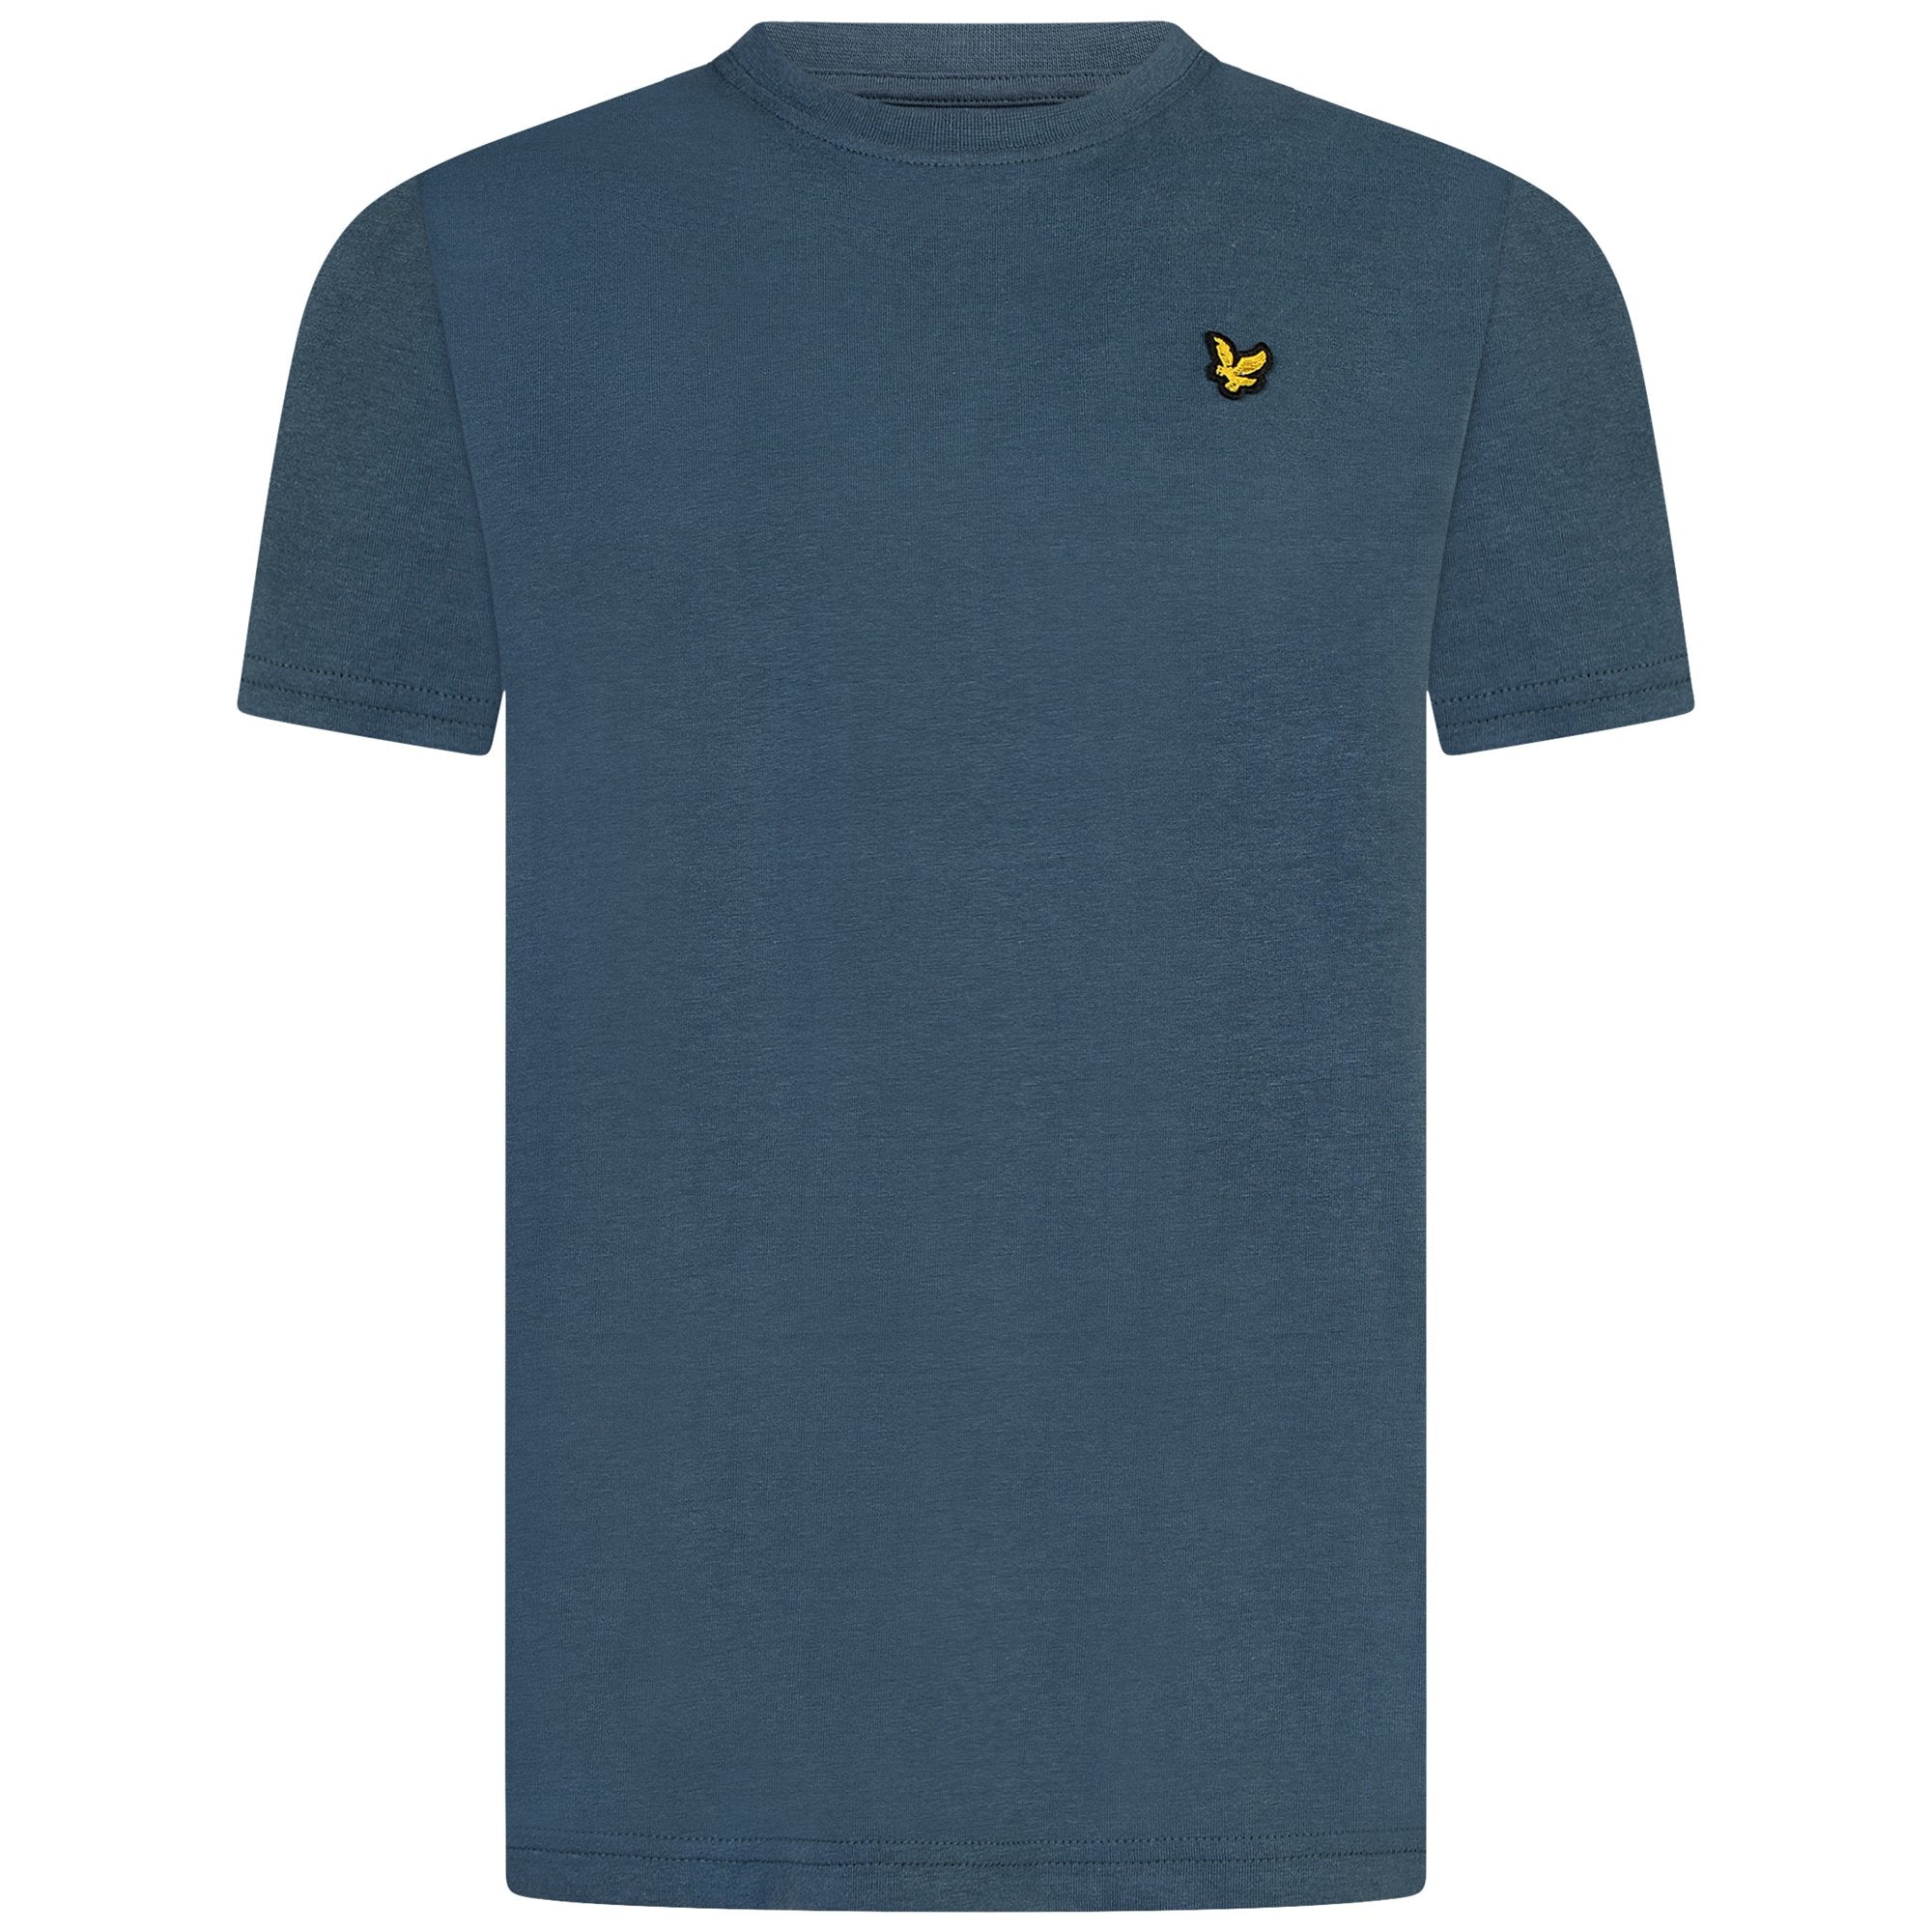 Jongens Classic T-Shirt Orion Blue van Lyle & Scott in de kleur Orion Blue in maat 170-176.